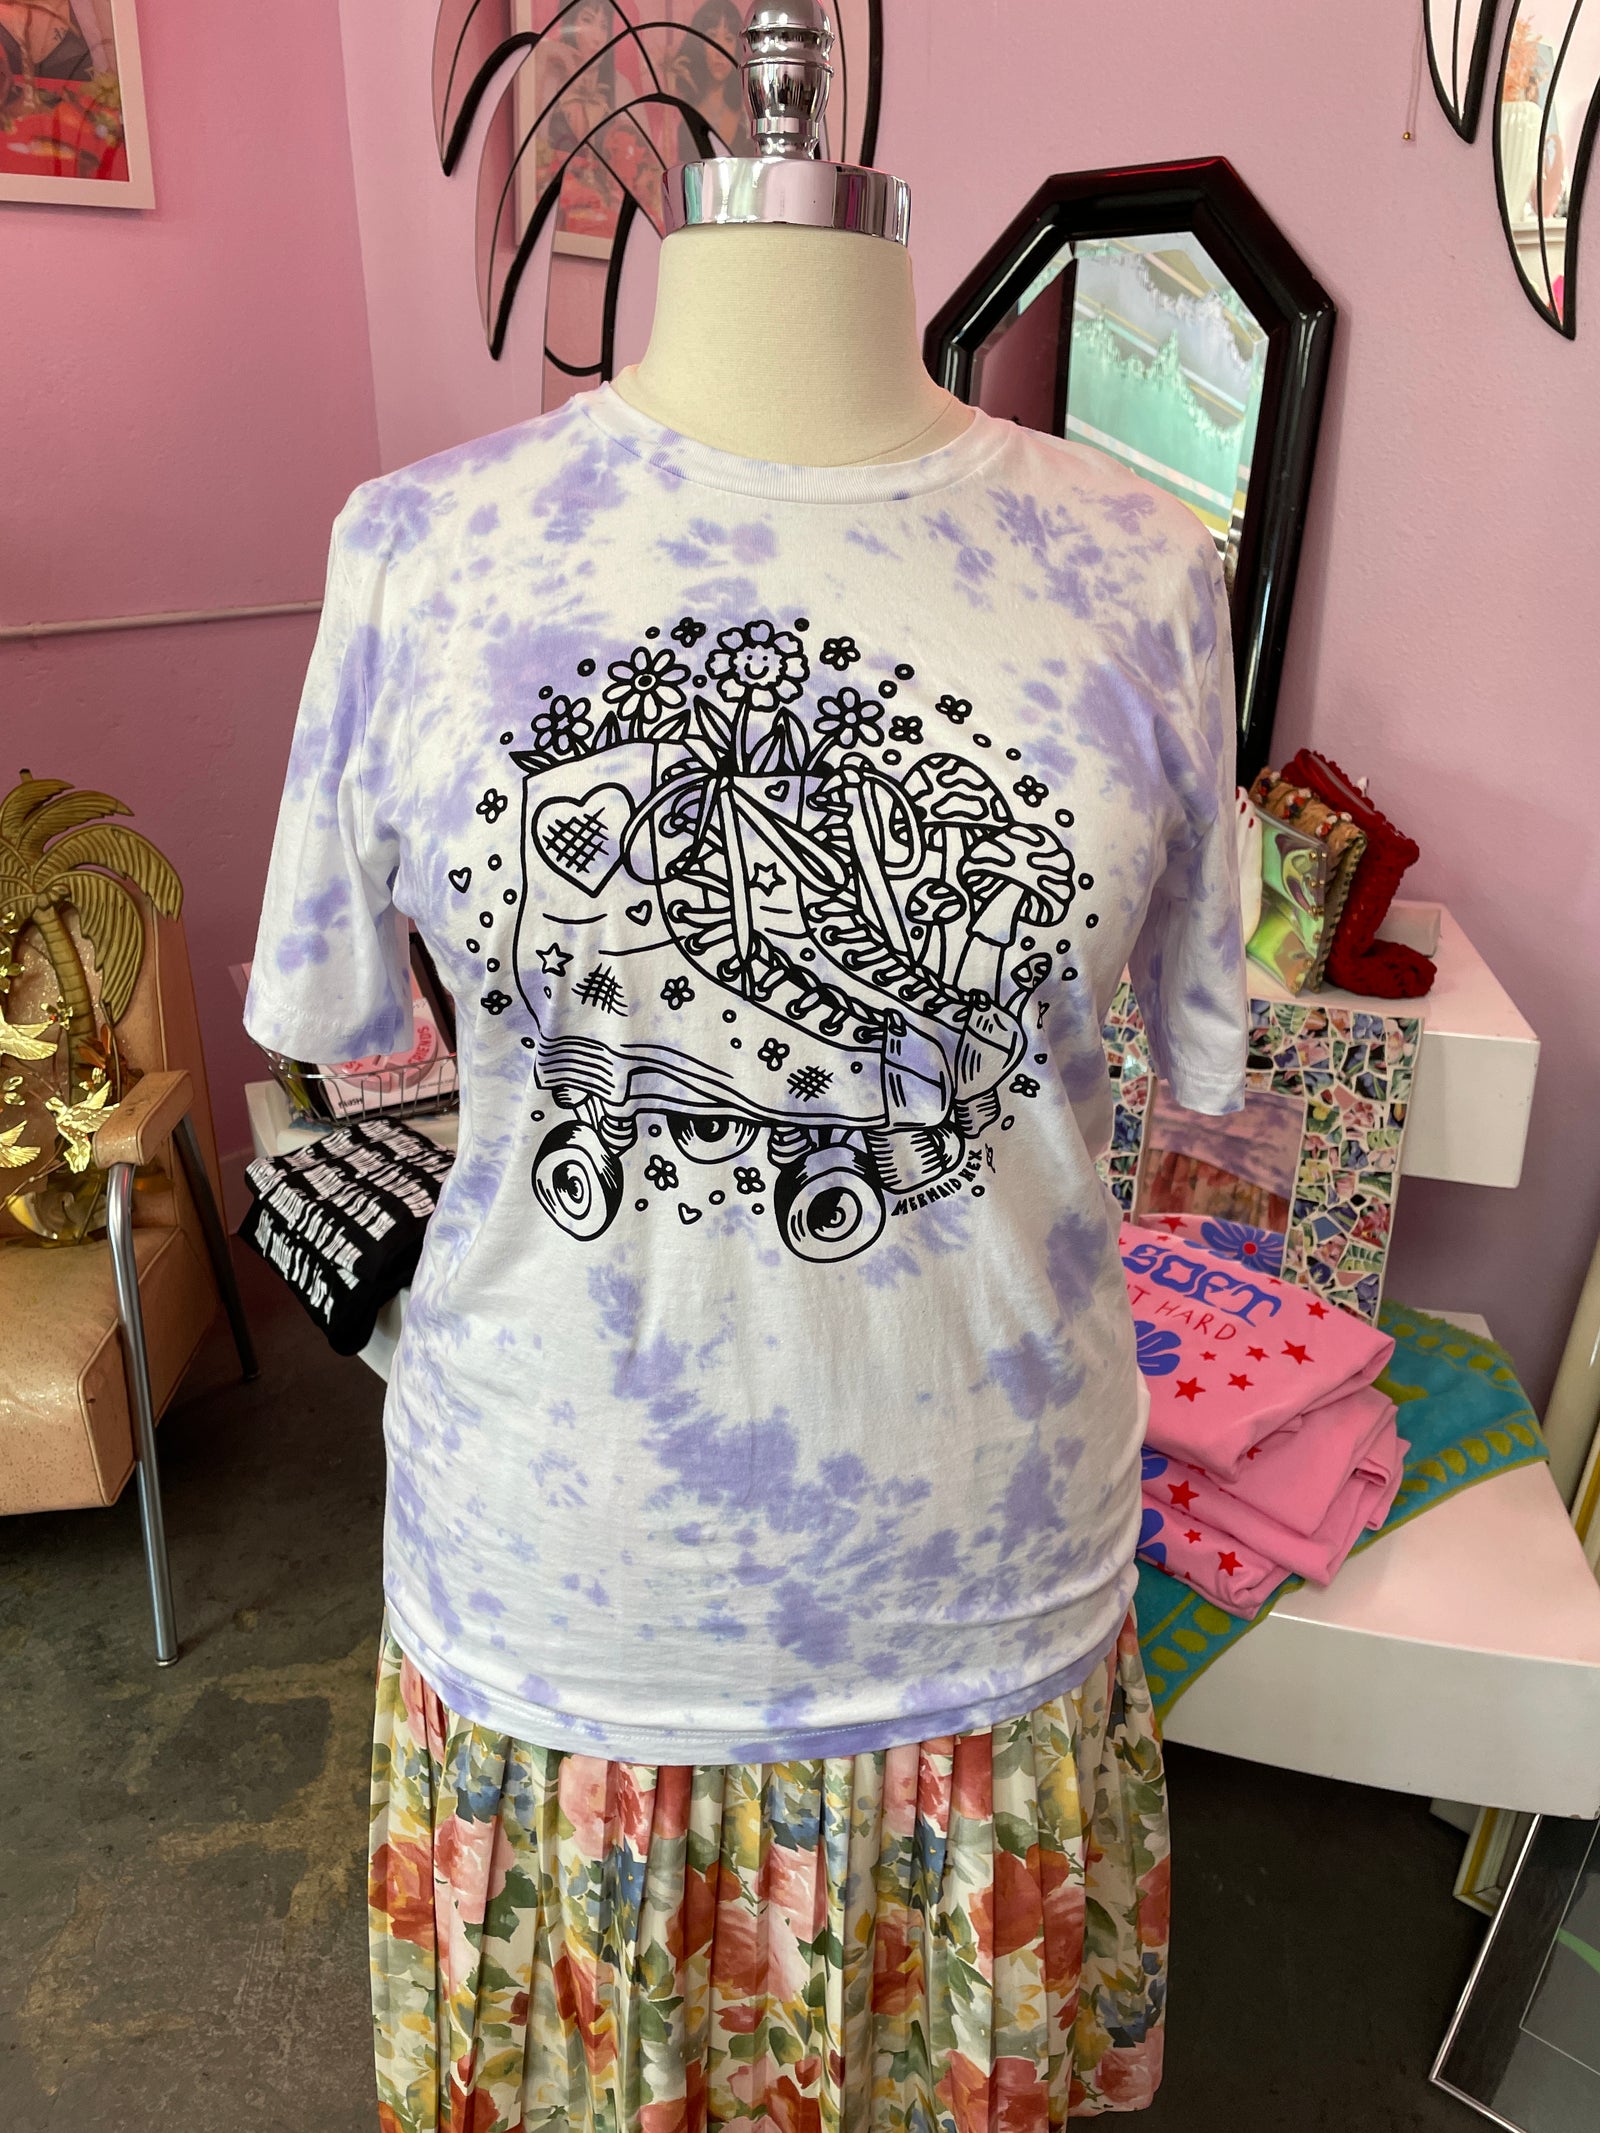 Purple Tye Dye Rollerskate Print T-Shirt from Mermaid Hex